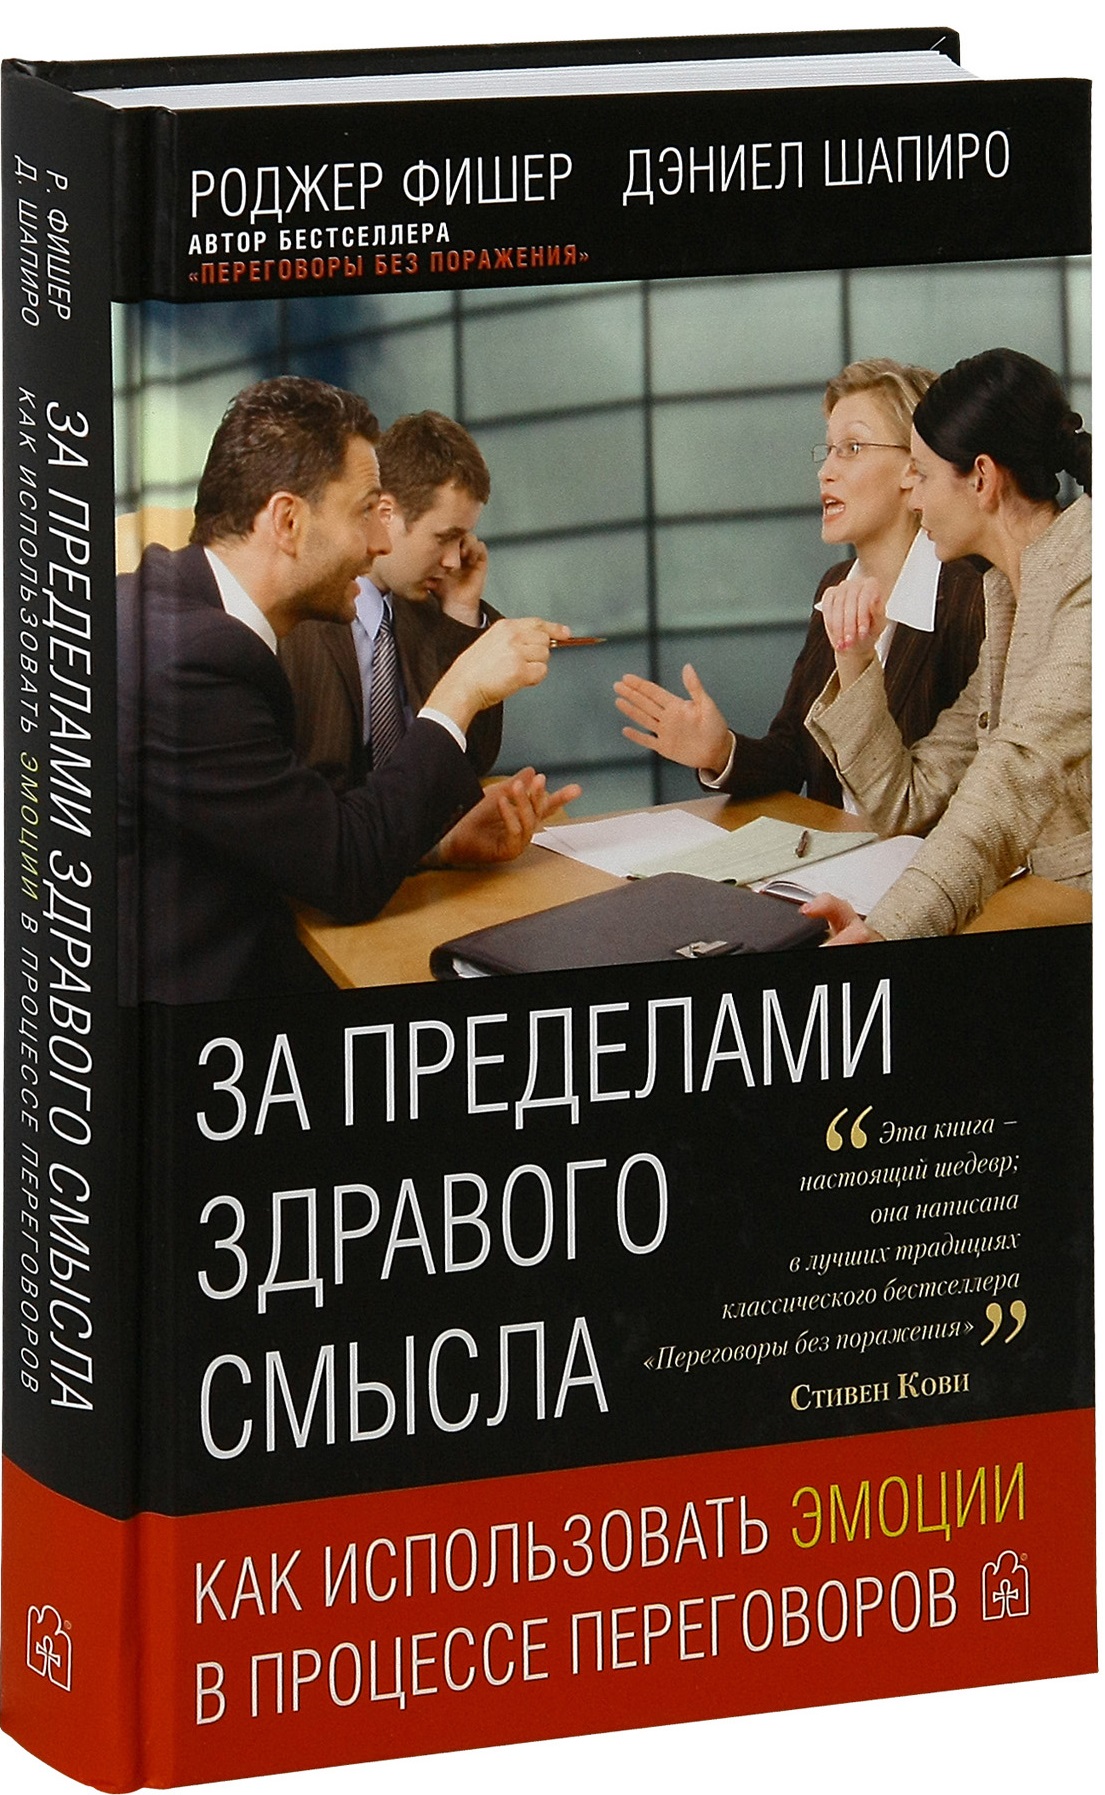 Книга про переговоры. Психология переговоров. Искусство переговоров книга. Навыки ведения переговоров книга.